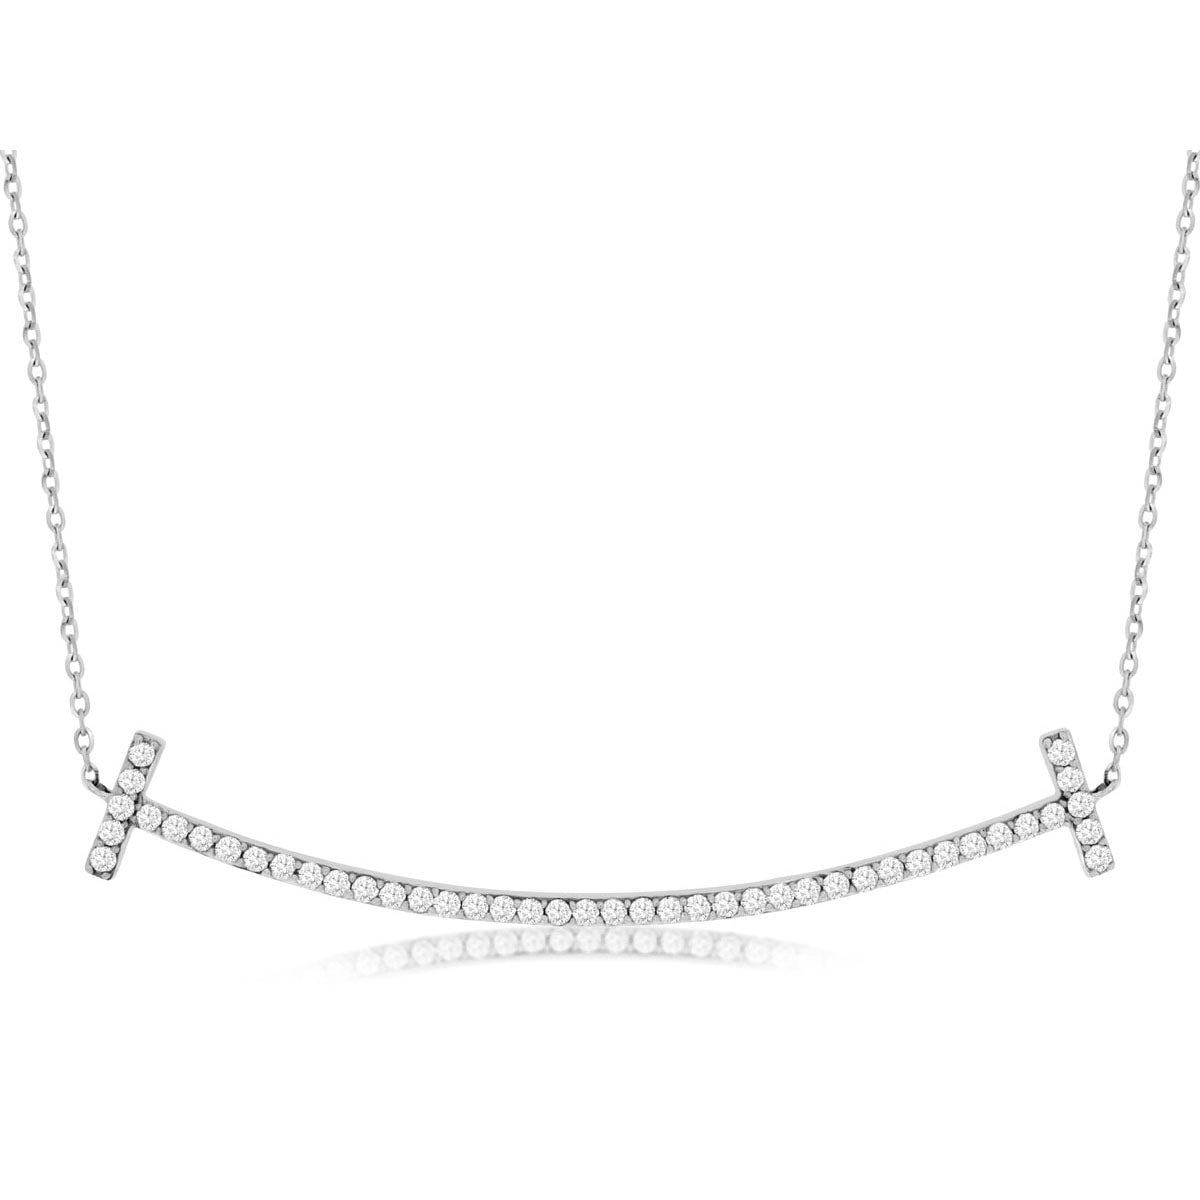 14kw Diamond Bar Necklace - eklektic jewelry studio